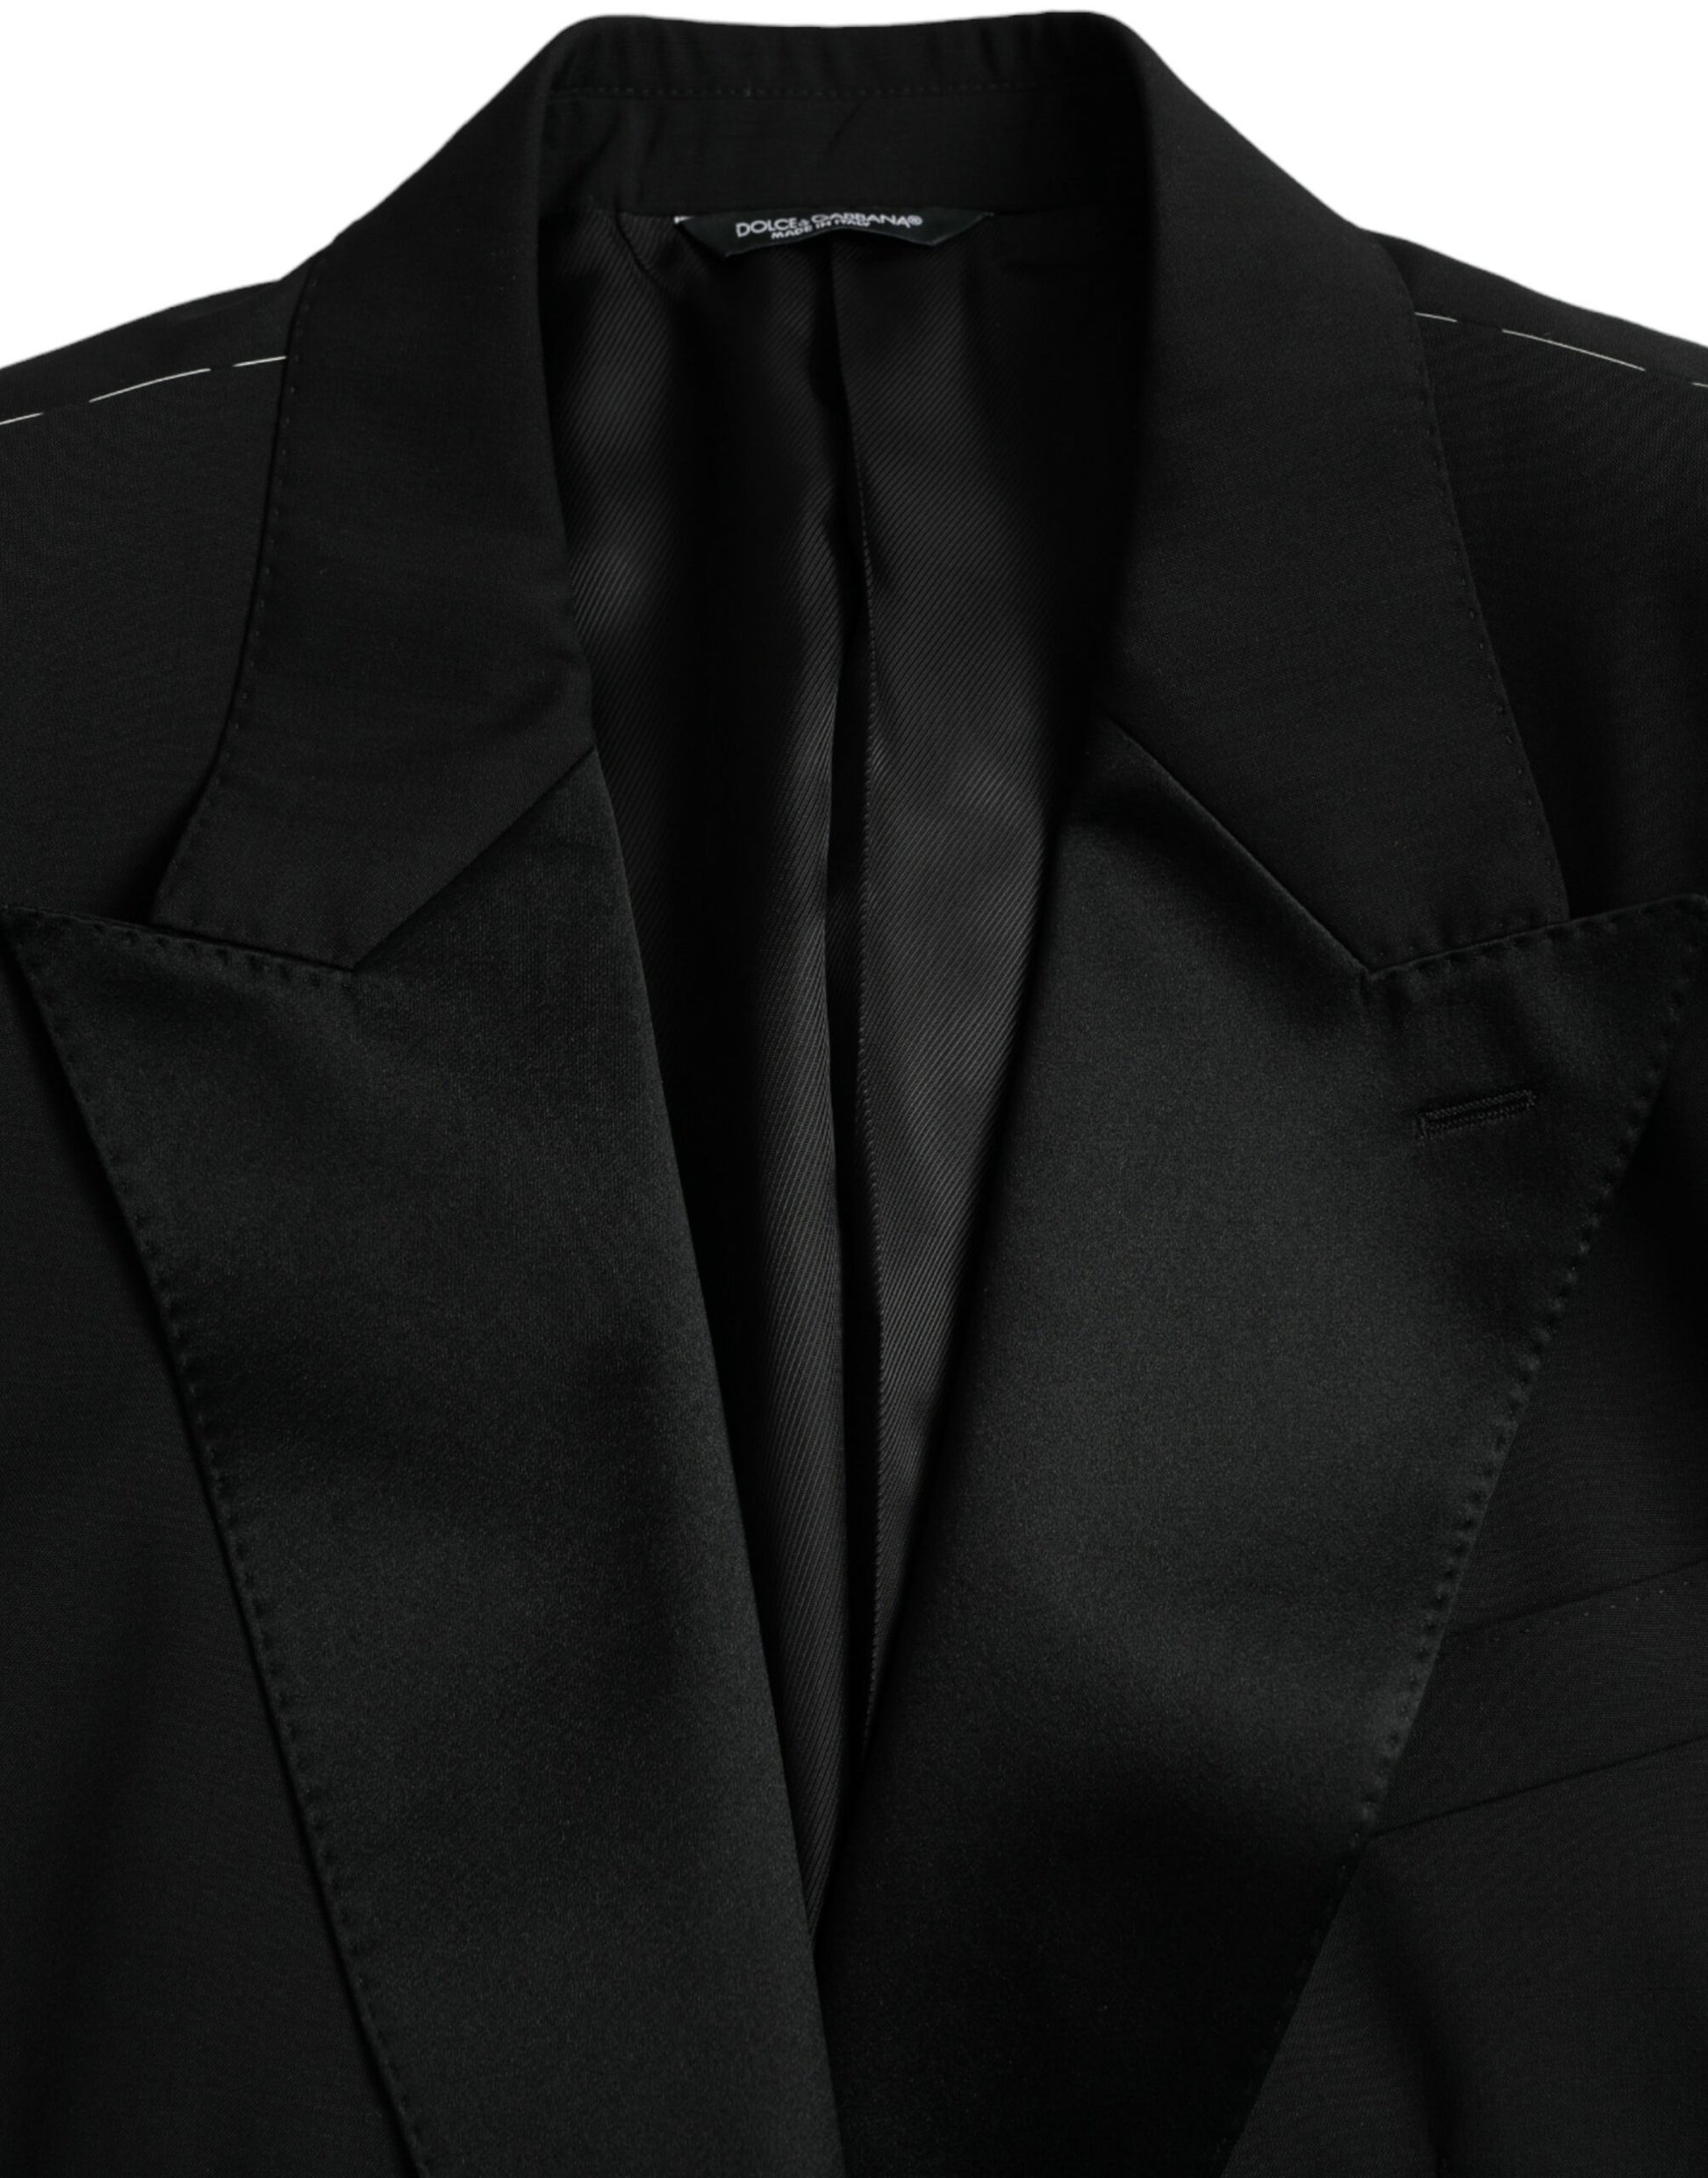 Black SICILIA Single Breasted Coat Blazer